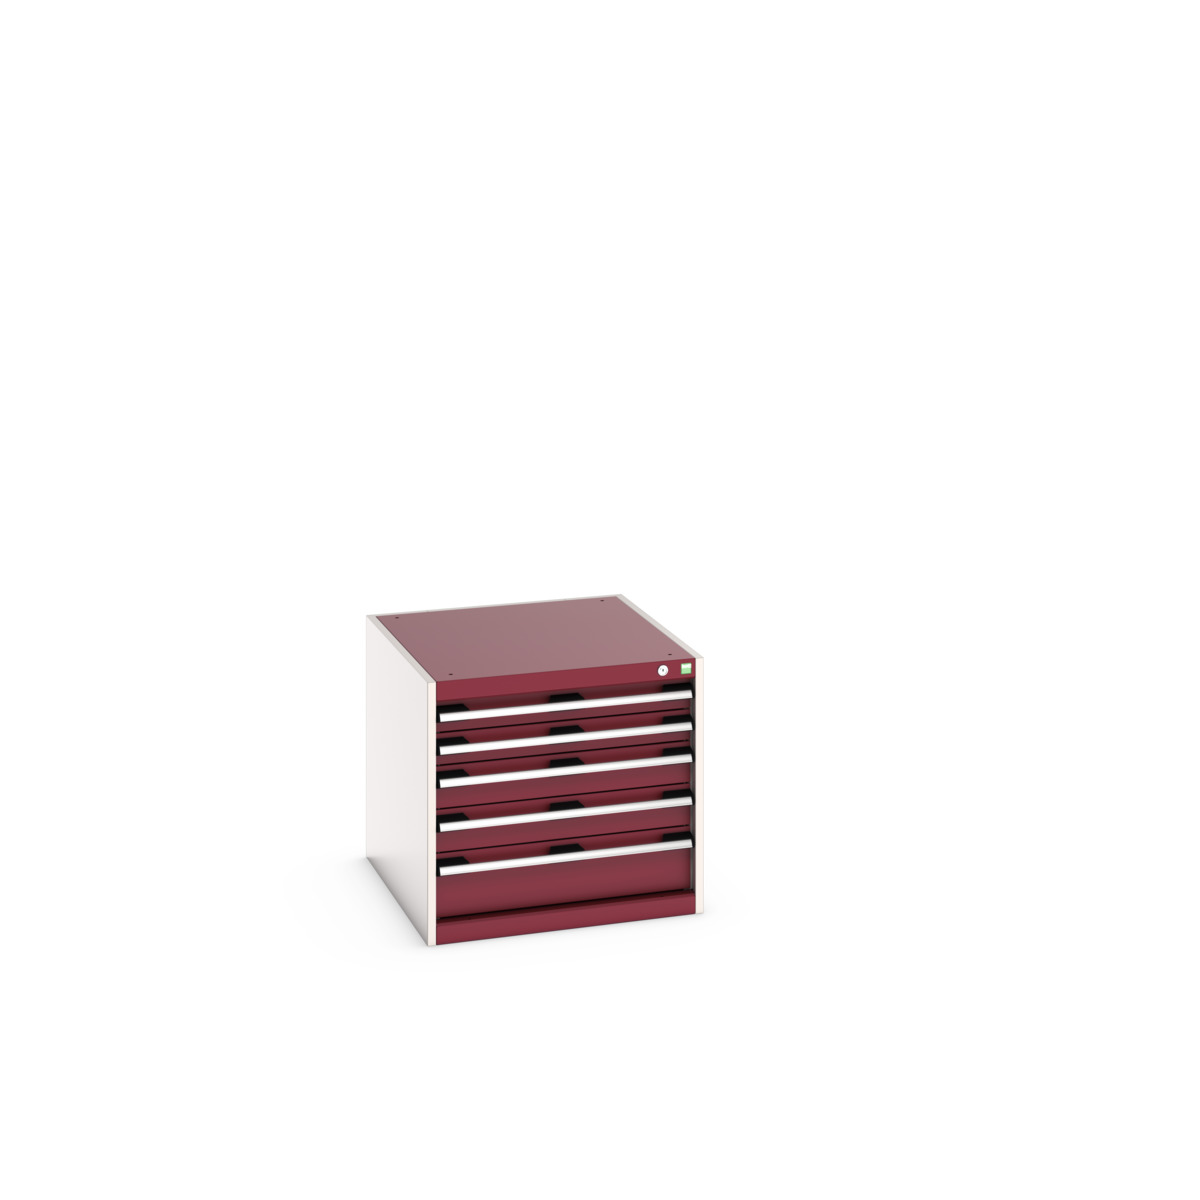 40027102.24V - cubio drawer cabinet